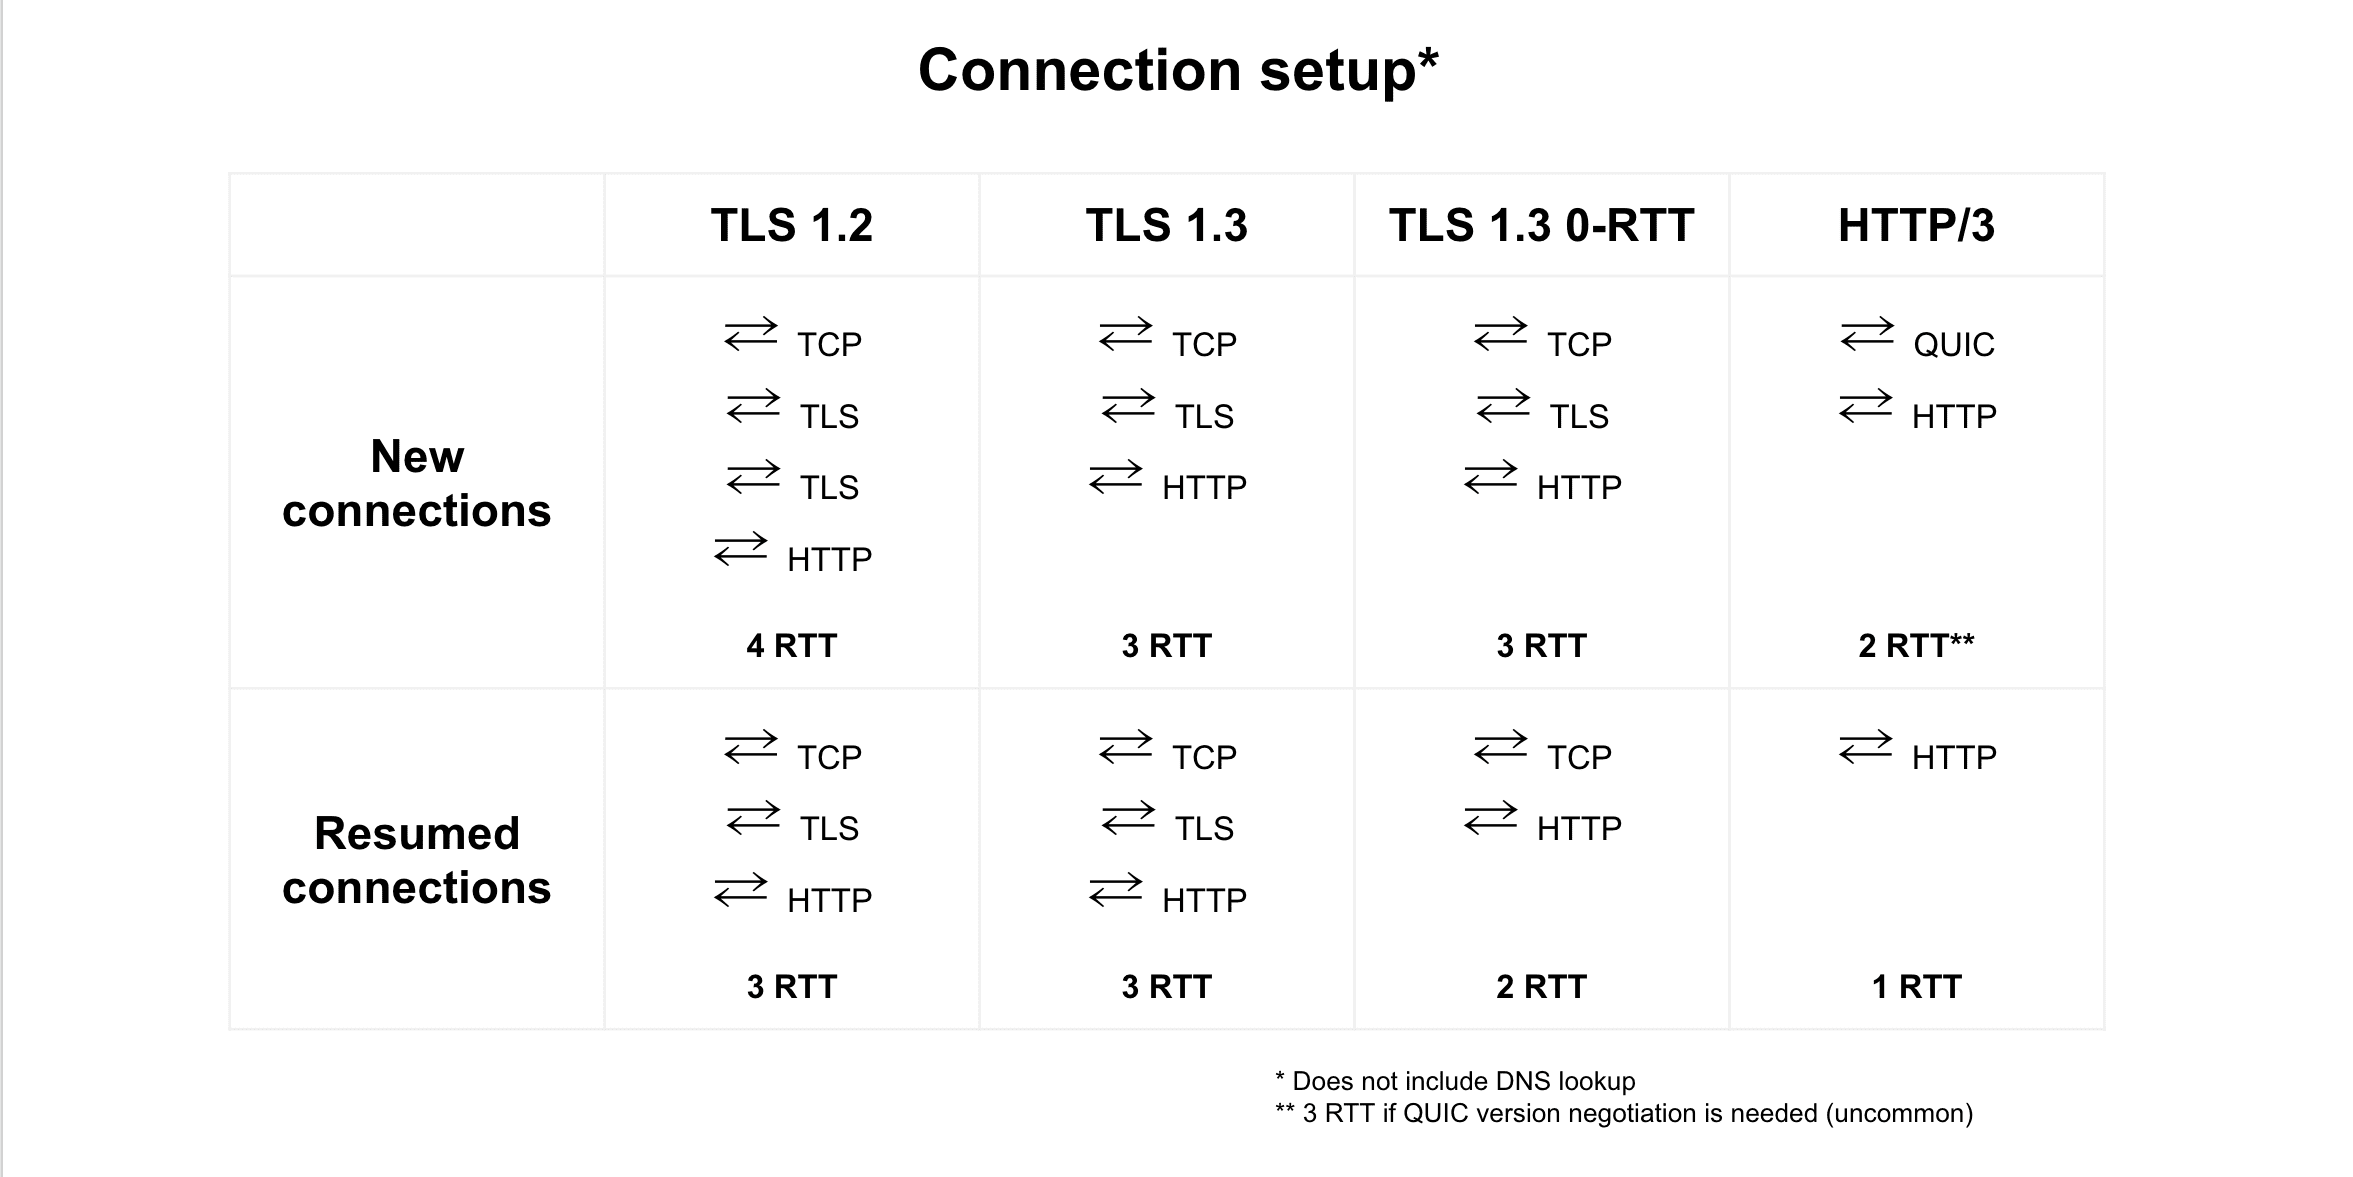 TLS 1.2, TLS 1.3, TLS 1.3 0-RTT ve HTTP/3 arasındaki bağlantı devam ettirmenin karşılaştırması